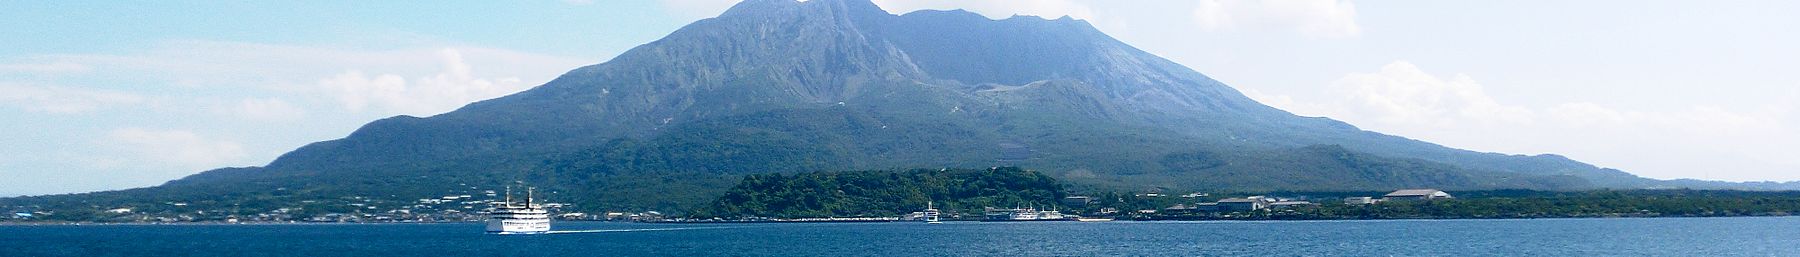 Sakurajima afiş.jpg